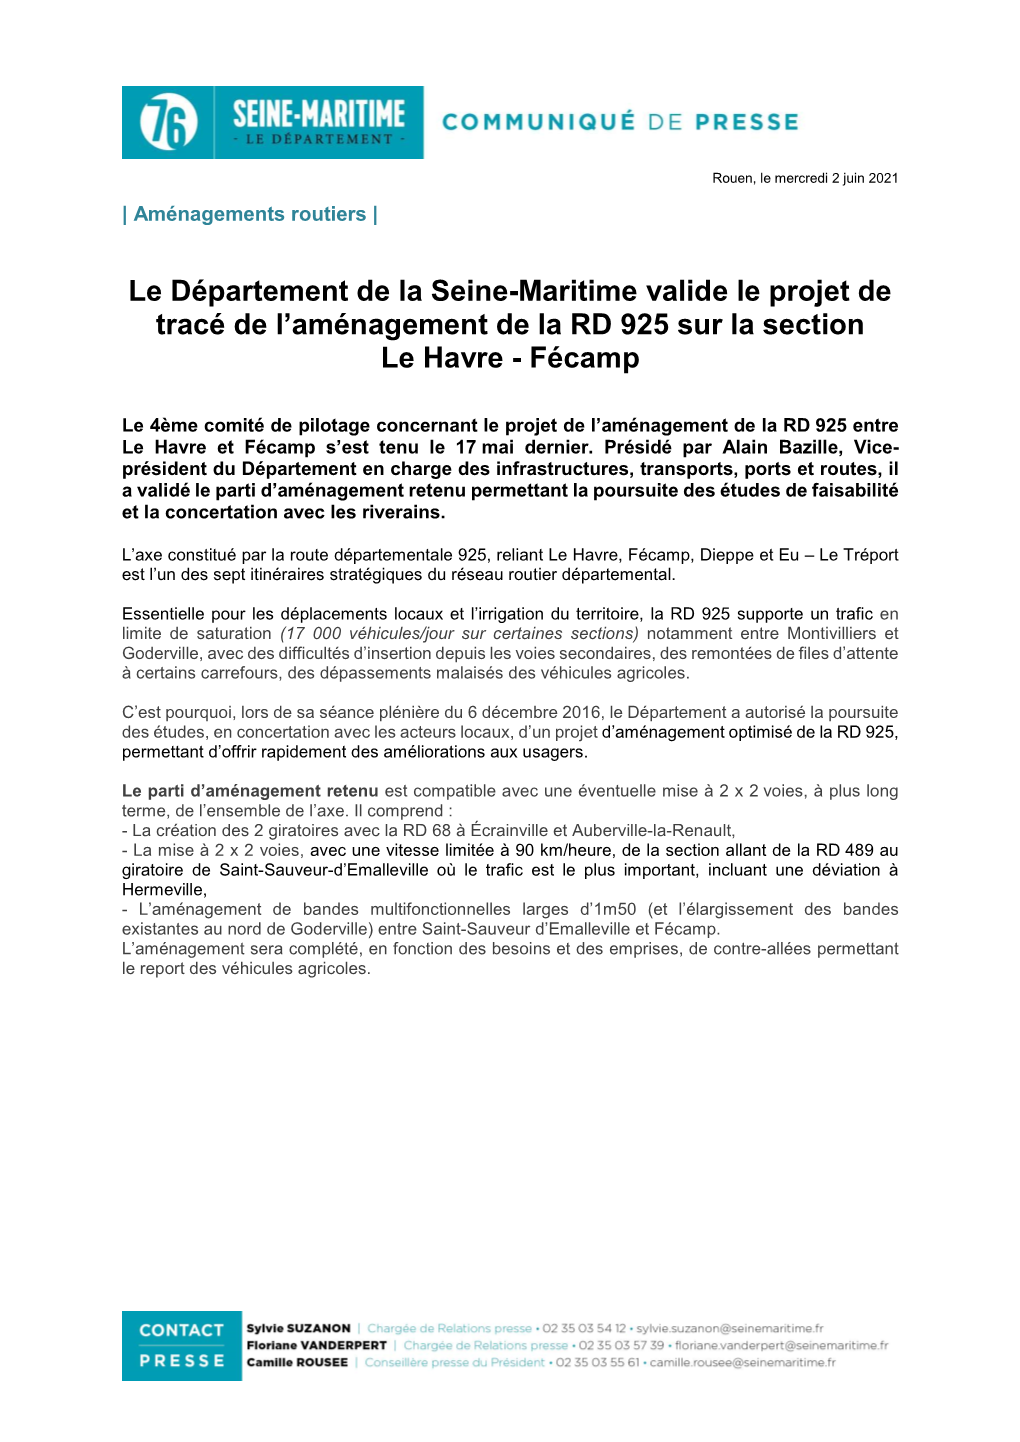 Le Département De La Seine-Maritime Valide Le Projet De Tracé De L’Aménagement De La RD 925 Sur La Section Le Havre - Fécamp